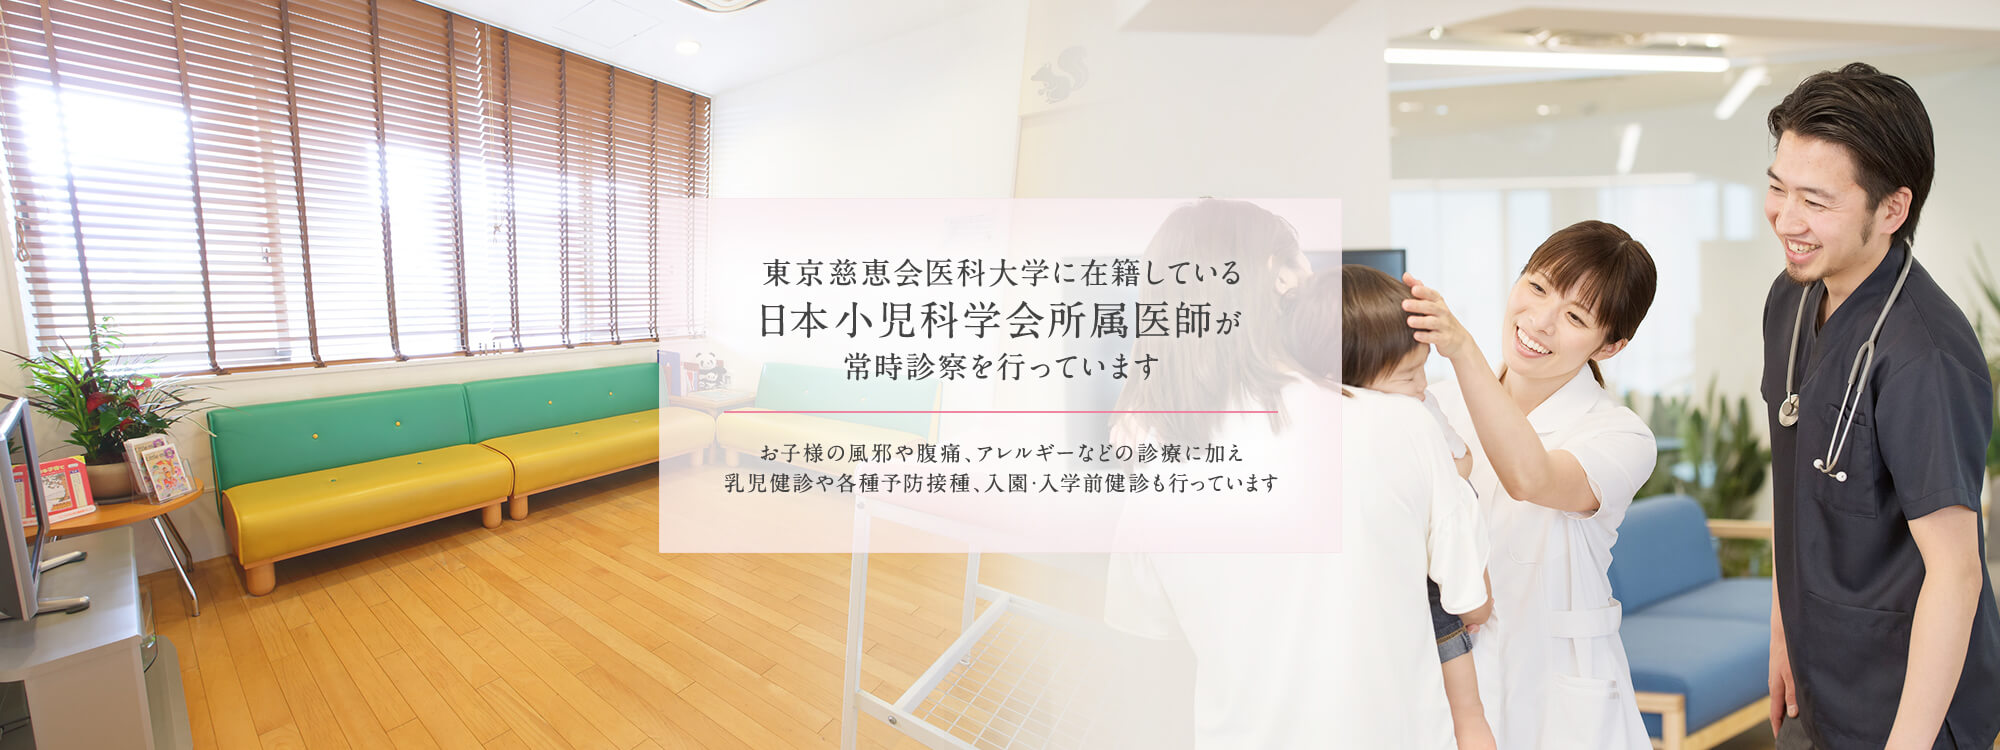 東京慈恵会医科大学に在籍している日本小児科学会所属医師が常時診察を行っています。お子様の風邪や腹痛、アレルギーなどの診療に加え乳児健診や各種予防接種、入園・入学前健診も行っています。